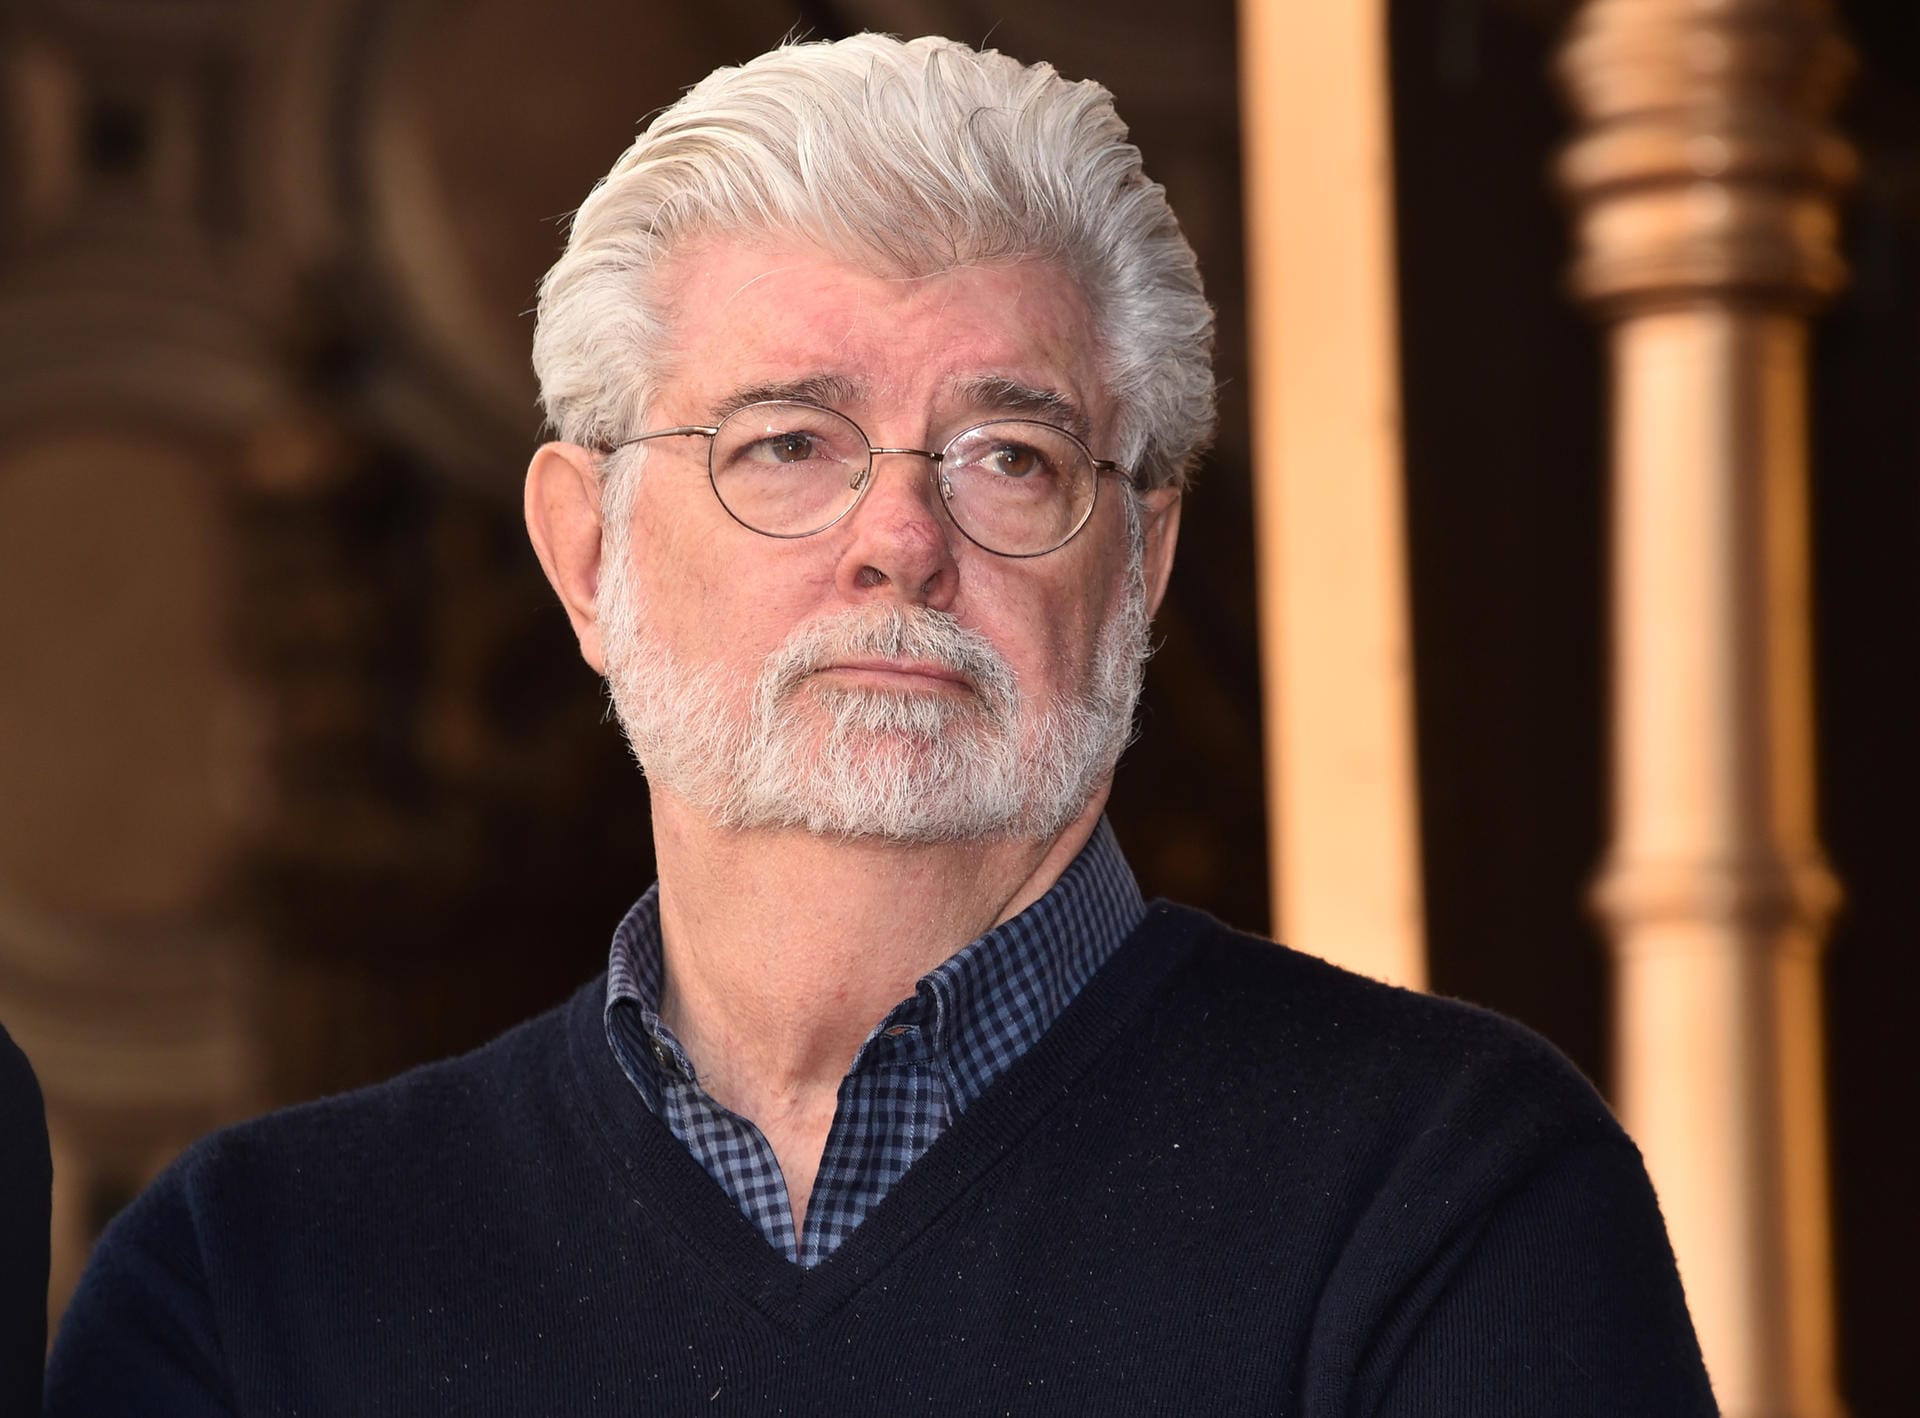 Platz 1: George Lucas ist Produzent, Drehbuchautor und Regisseur und mit Abstand der reichste US-Promi 2018. Sein Vermögen wird auf 5,4 Milliarden US-Dollar geschätzt.